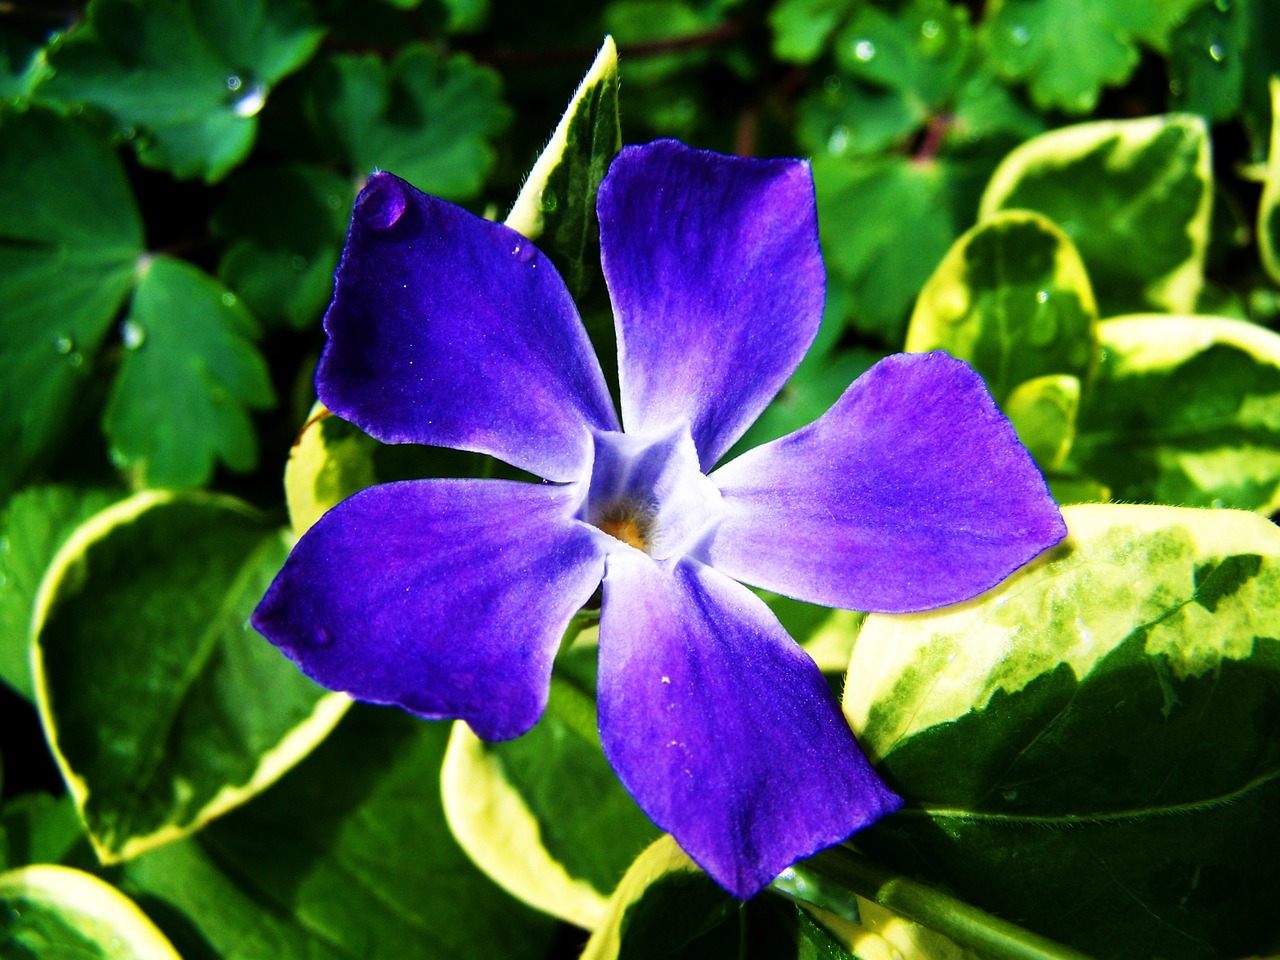 a bluish-purple flower spring flower garden free photo